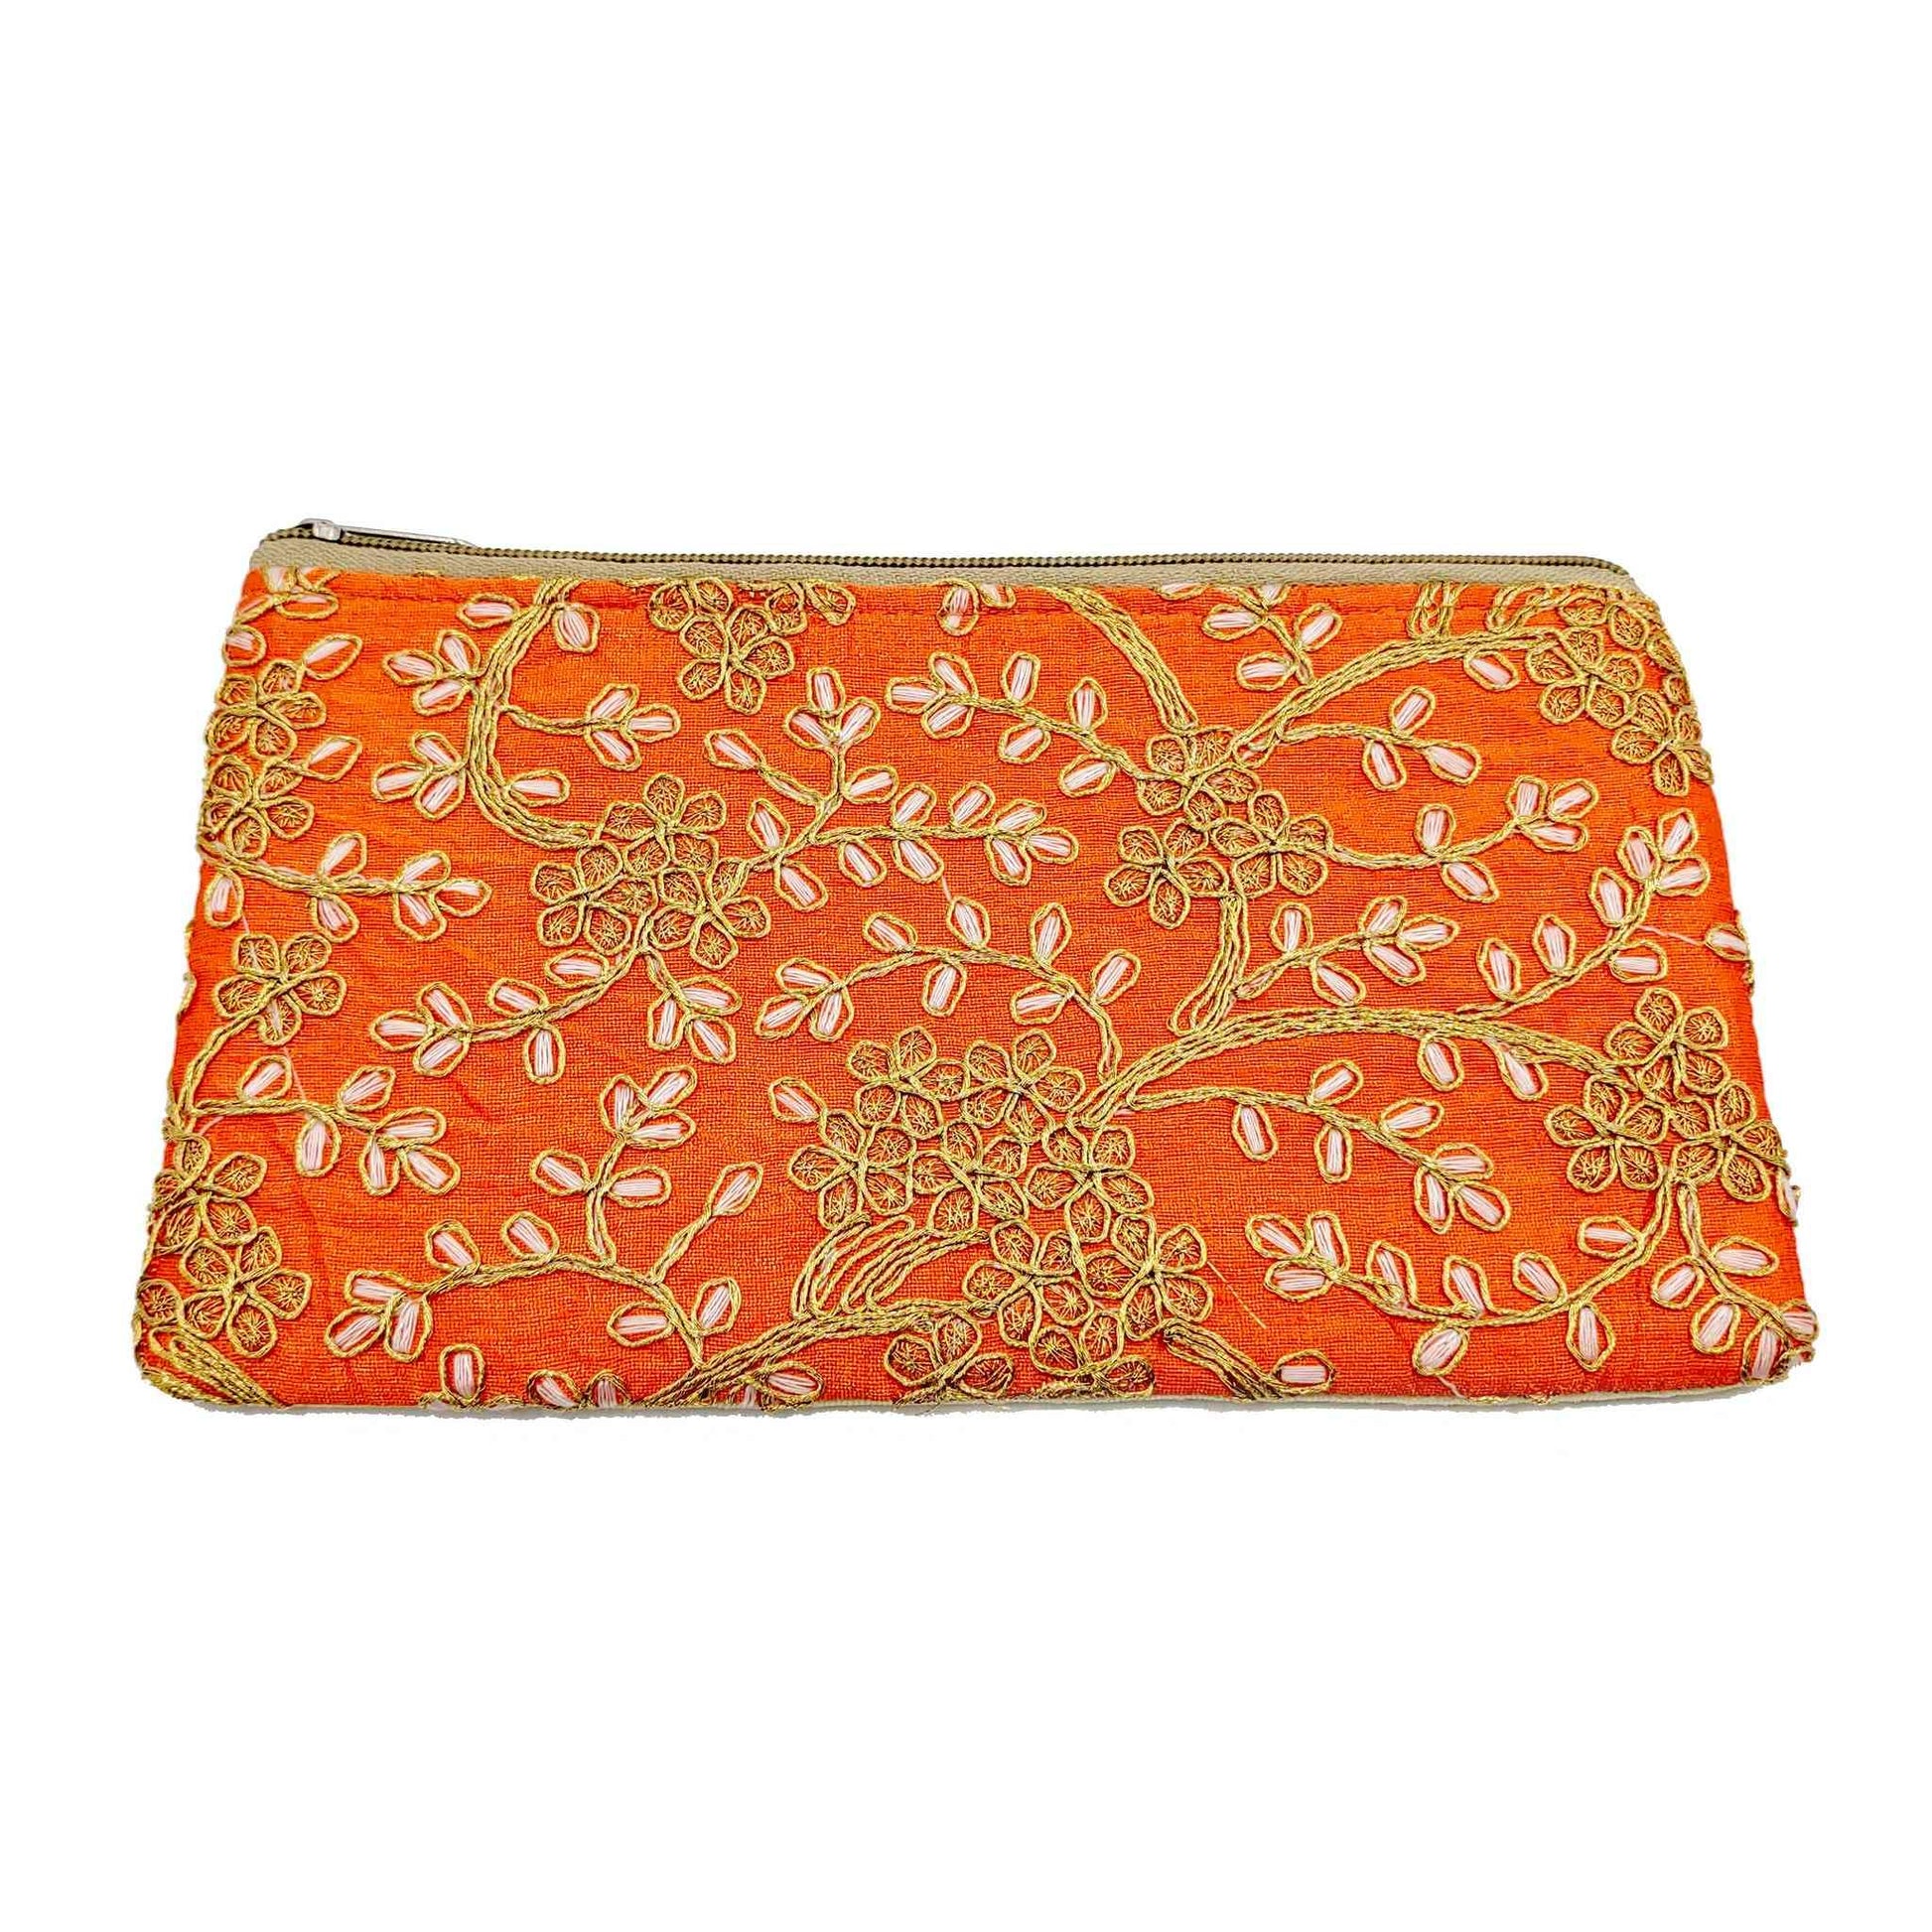 Handmade Hand-vowen Gota work Stylish Elegant Purse Pouch for Girls, Women, Ladies, Orange - Indian Petals